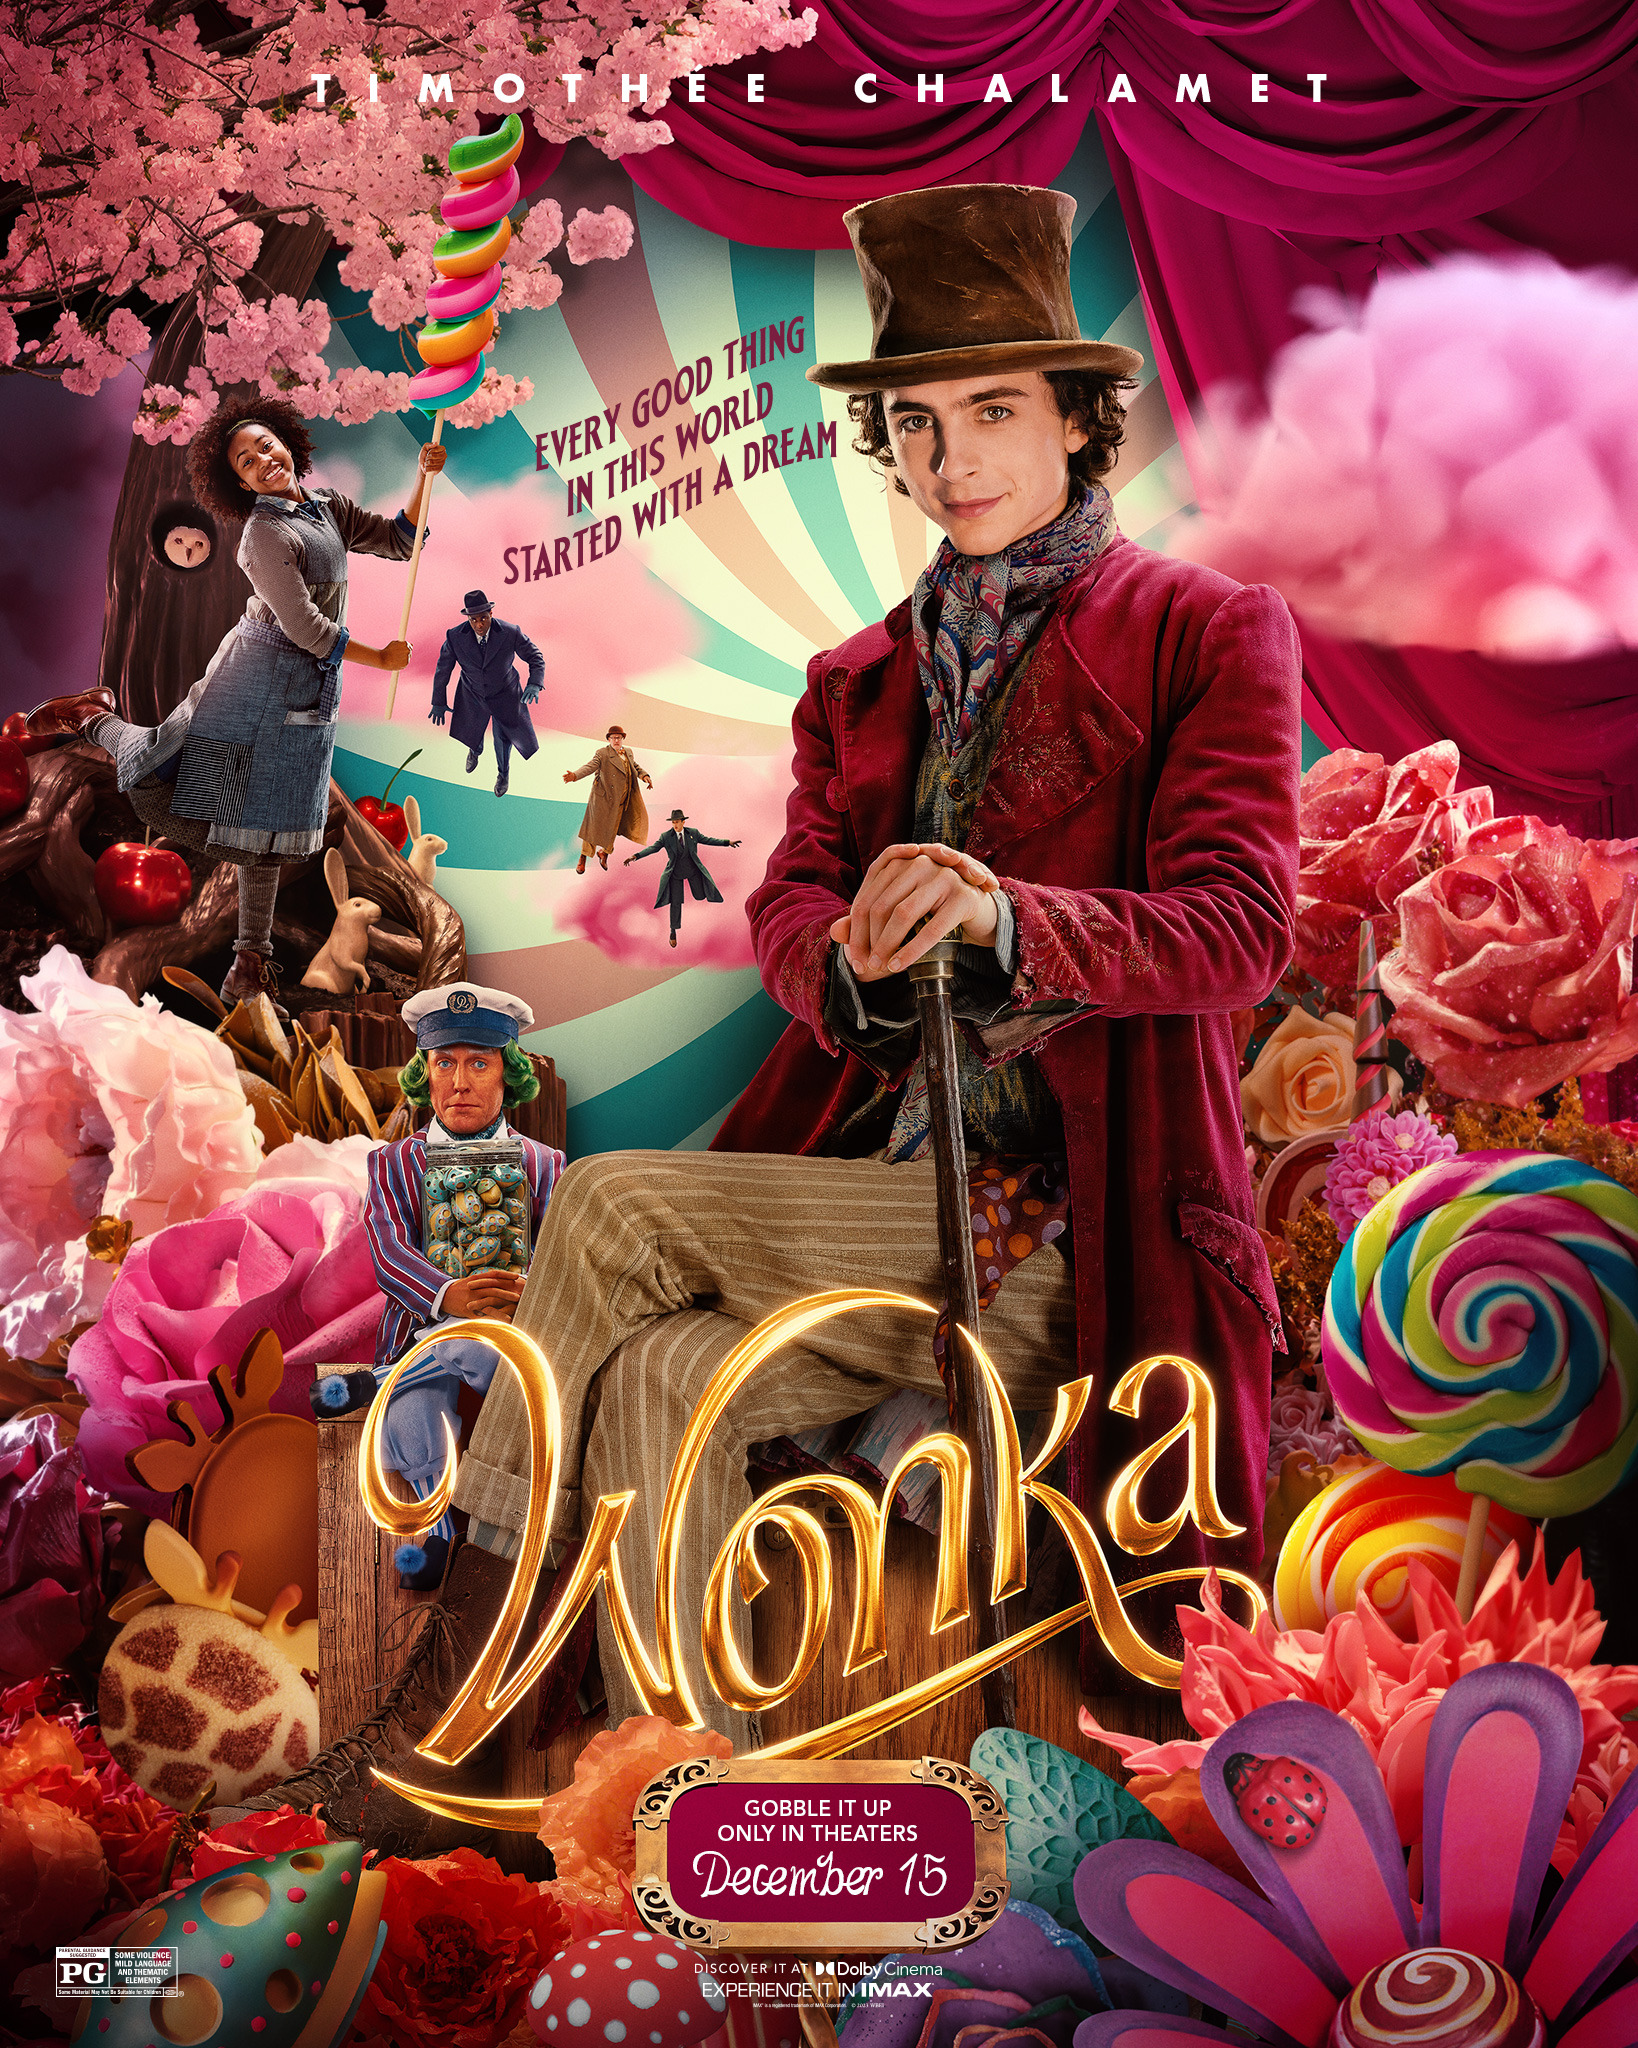 Cover Art for "Wonka"